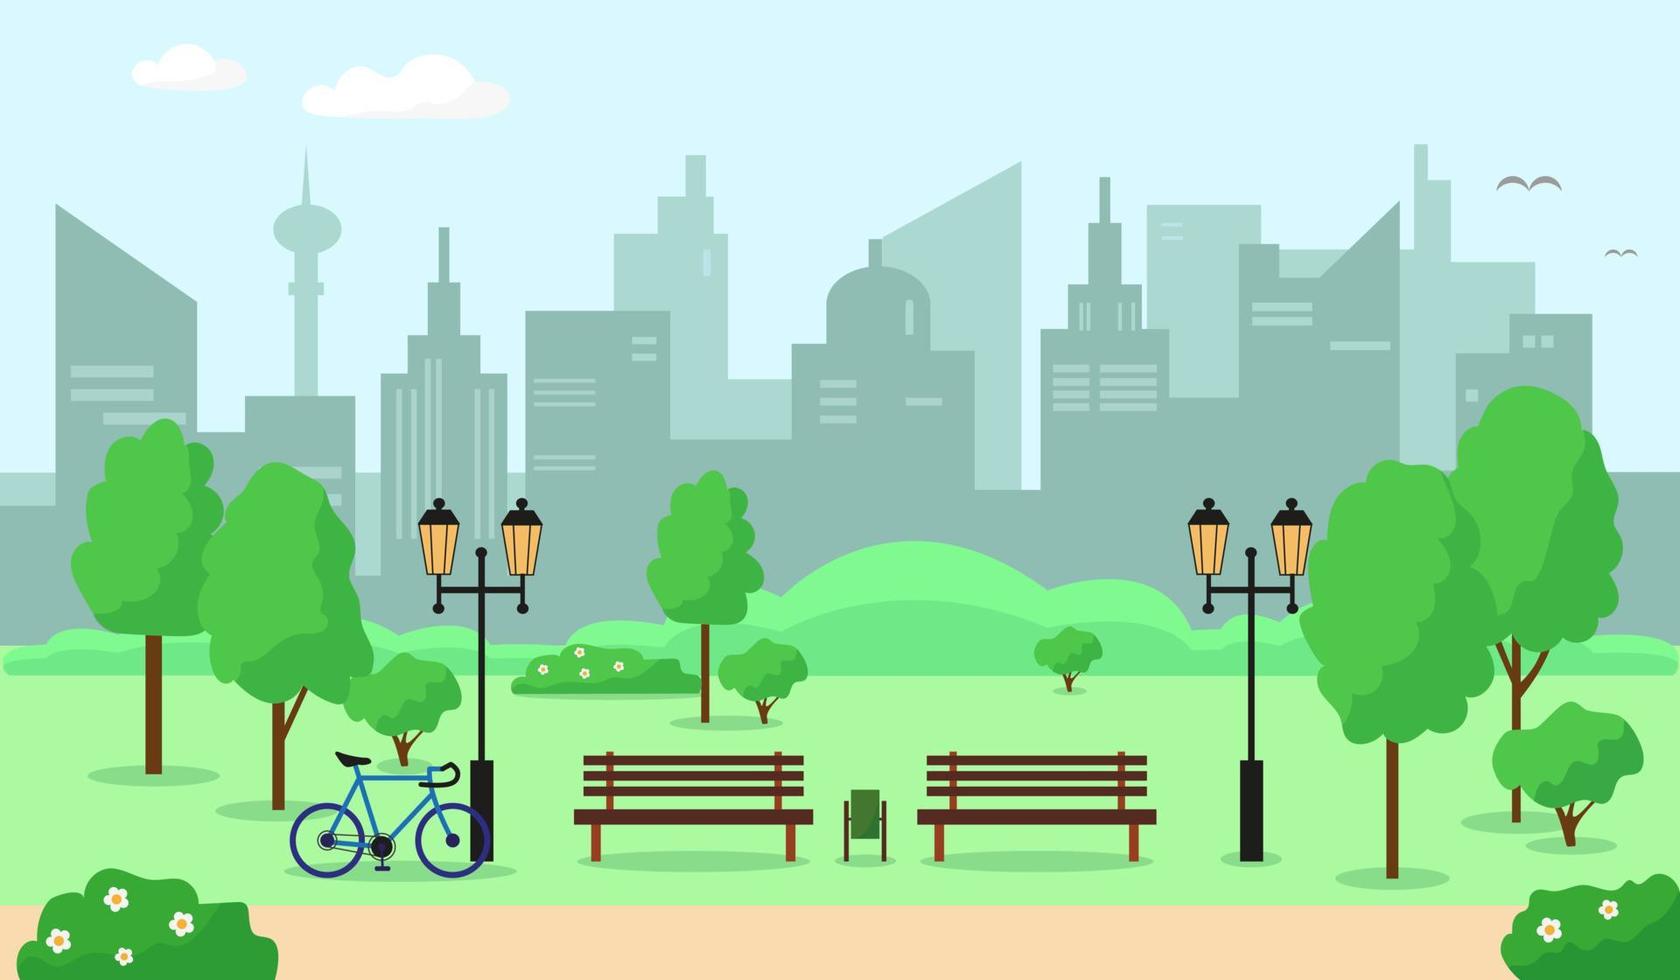 parque de la ciudad con árboles, banco, flores y edificios. Ilustración de vector de fondo de paisaje de primavera o verano.